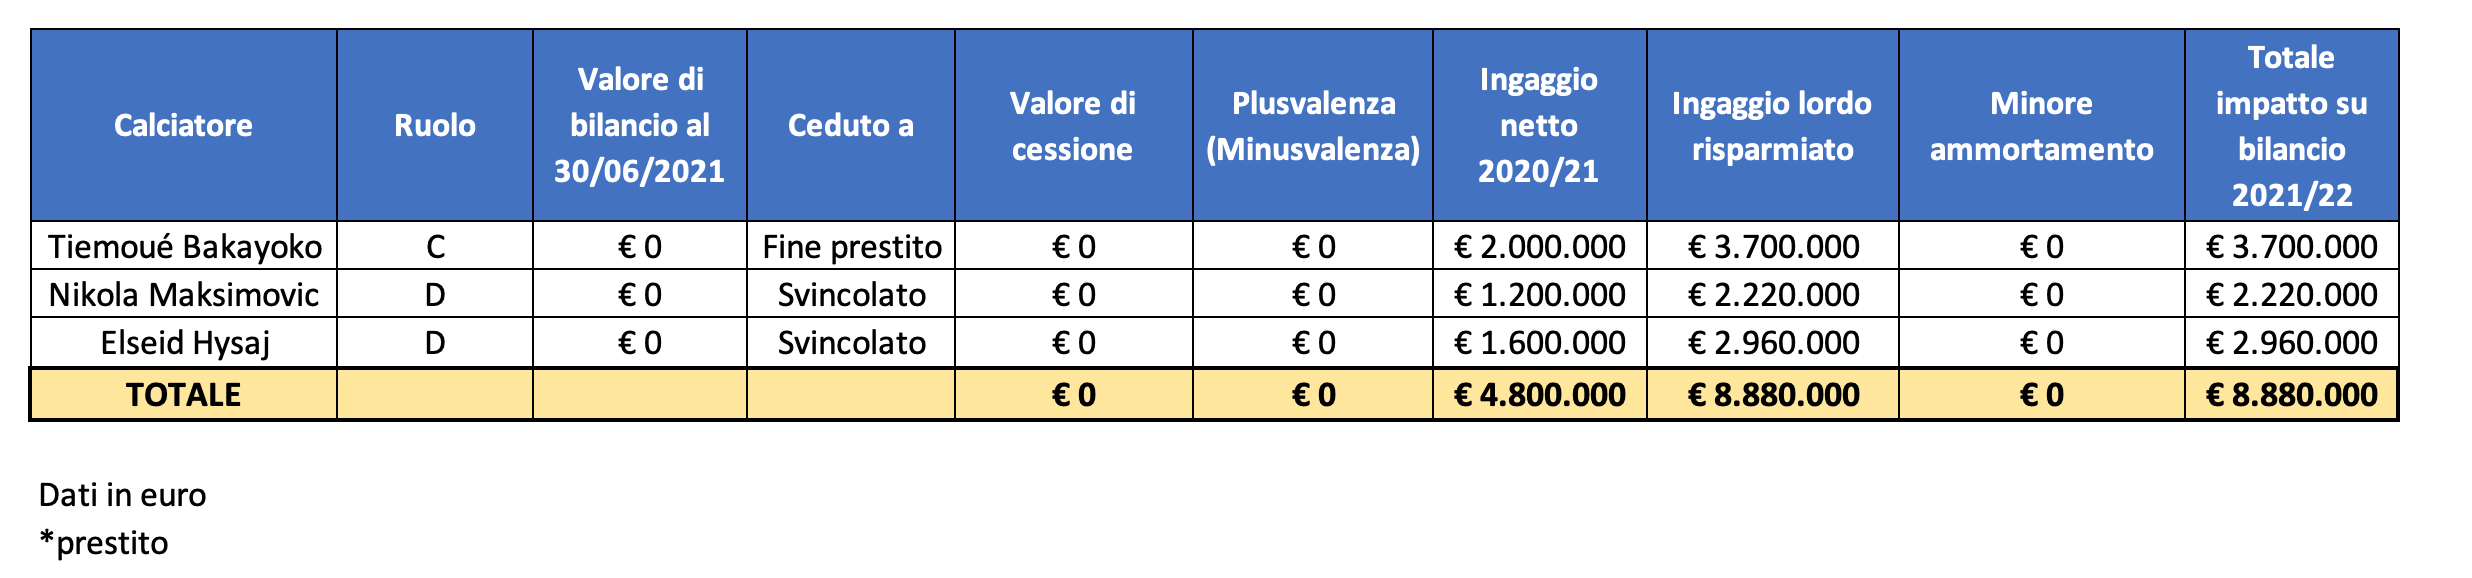 Napoli impatto calciomercato bilancio 2021 2022